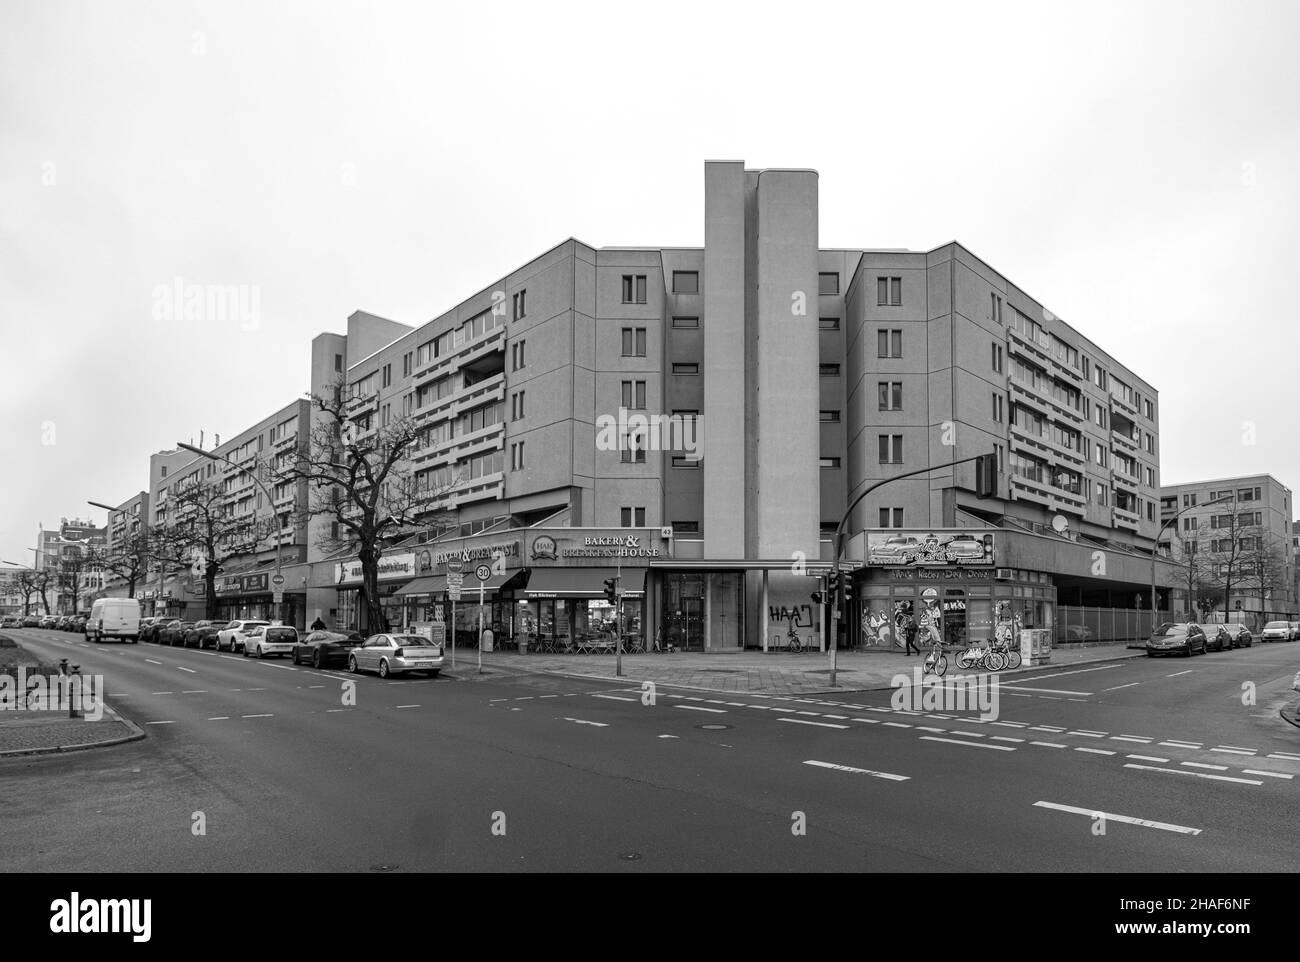 Schöneberger Terrassen, Berlín. Sozialer Wohnungsbau der 1970er Jahre Foto de stock